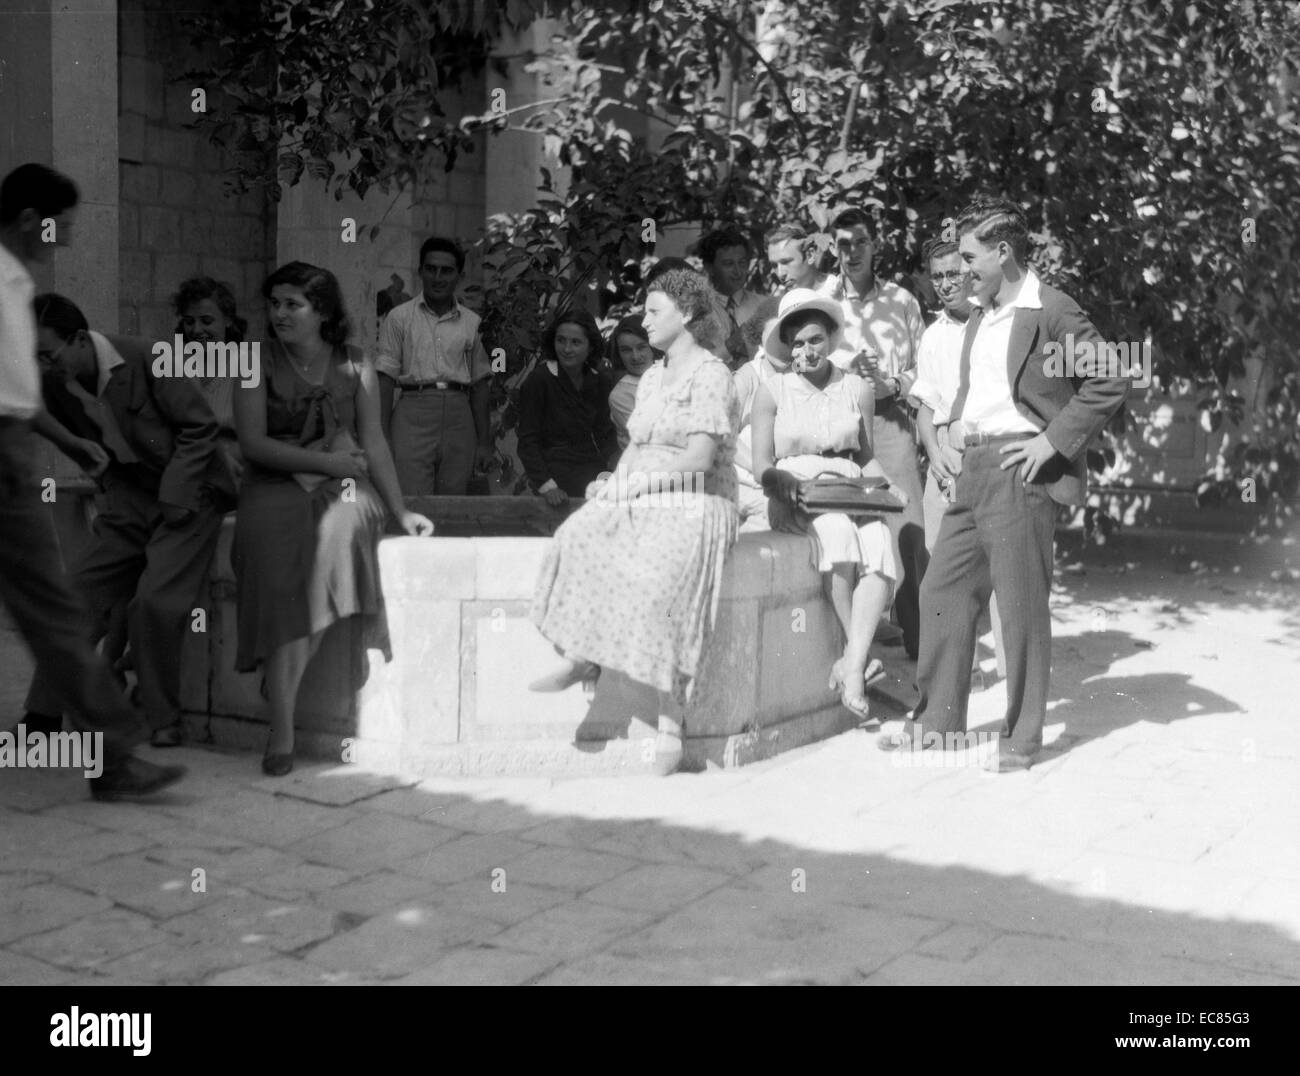 Photographie d'activités sionistes en Palestine un groupe de co-éducation à l'Université hébraïque de Jérusalem. Datée 1930 Banque D'Images